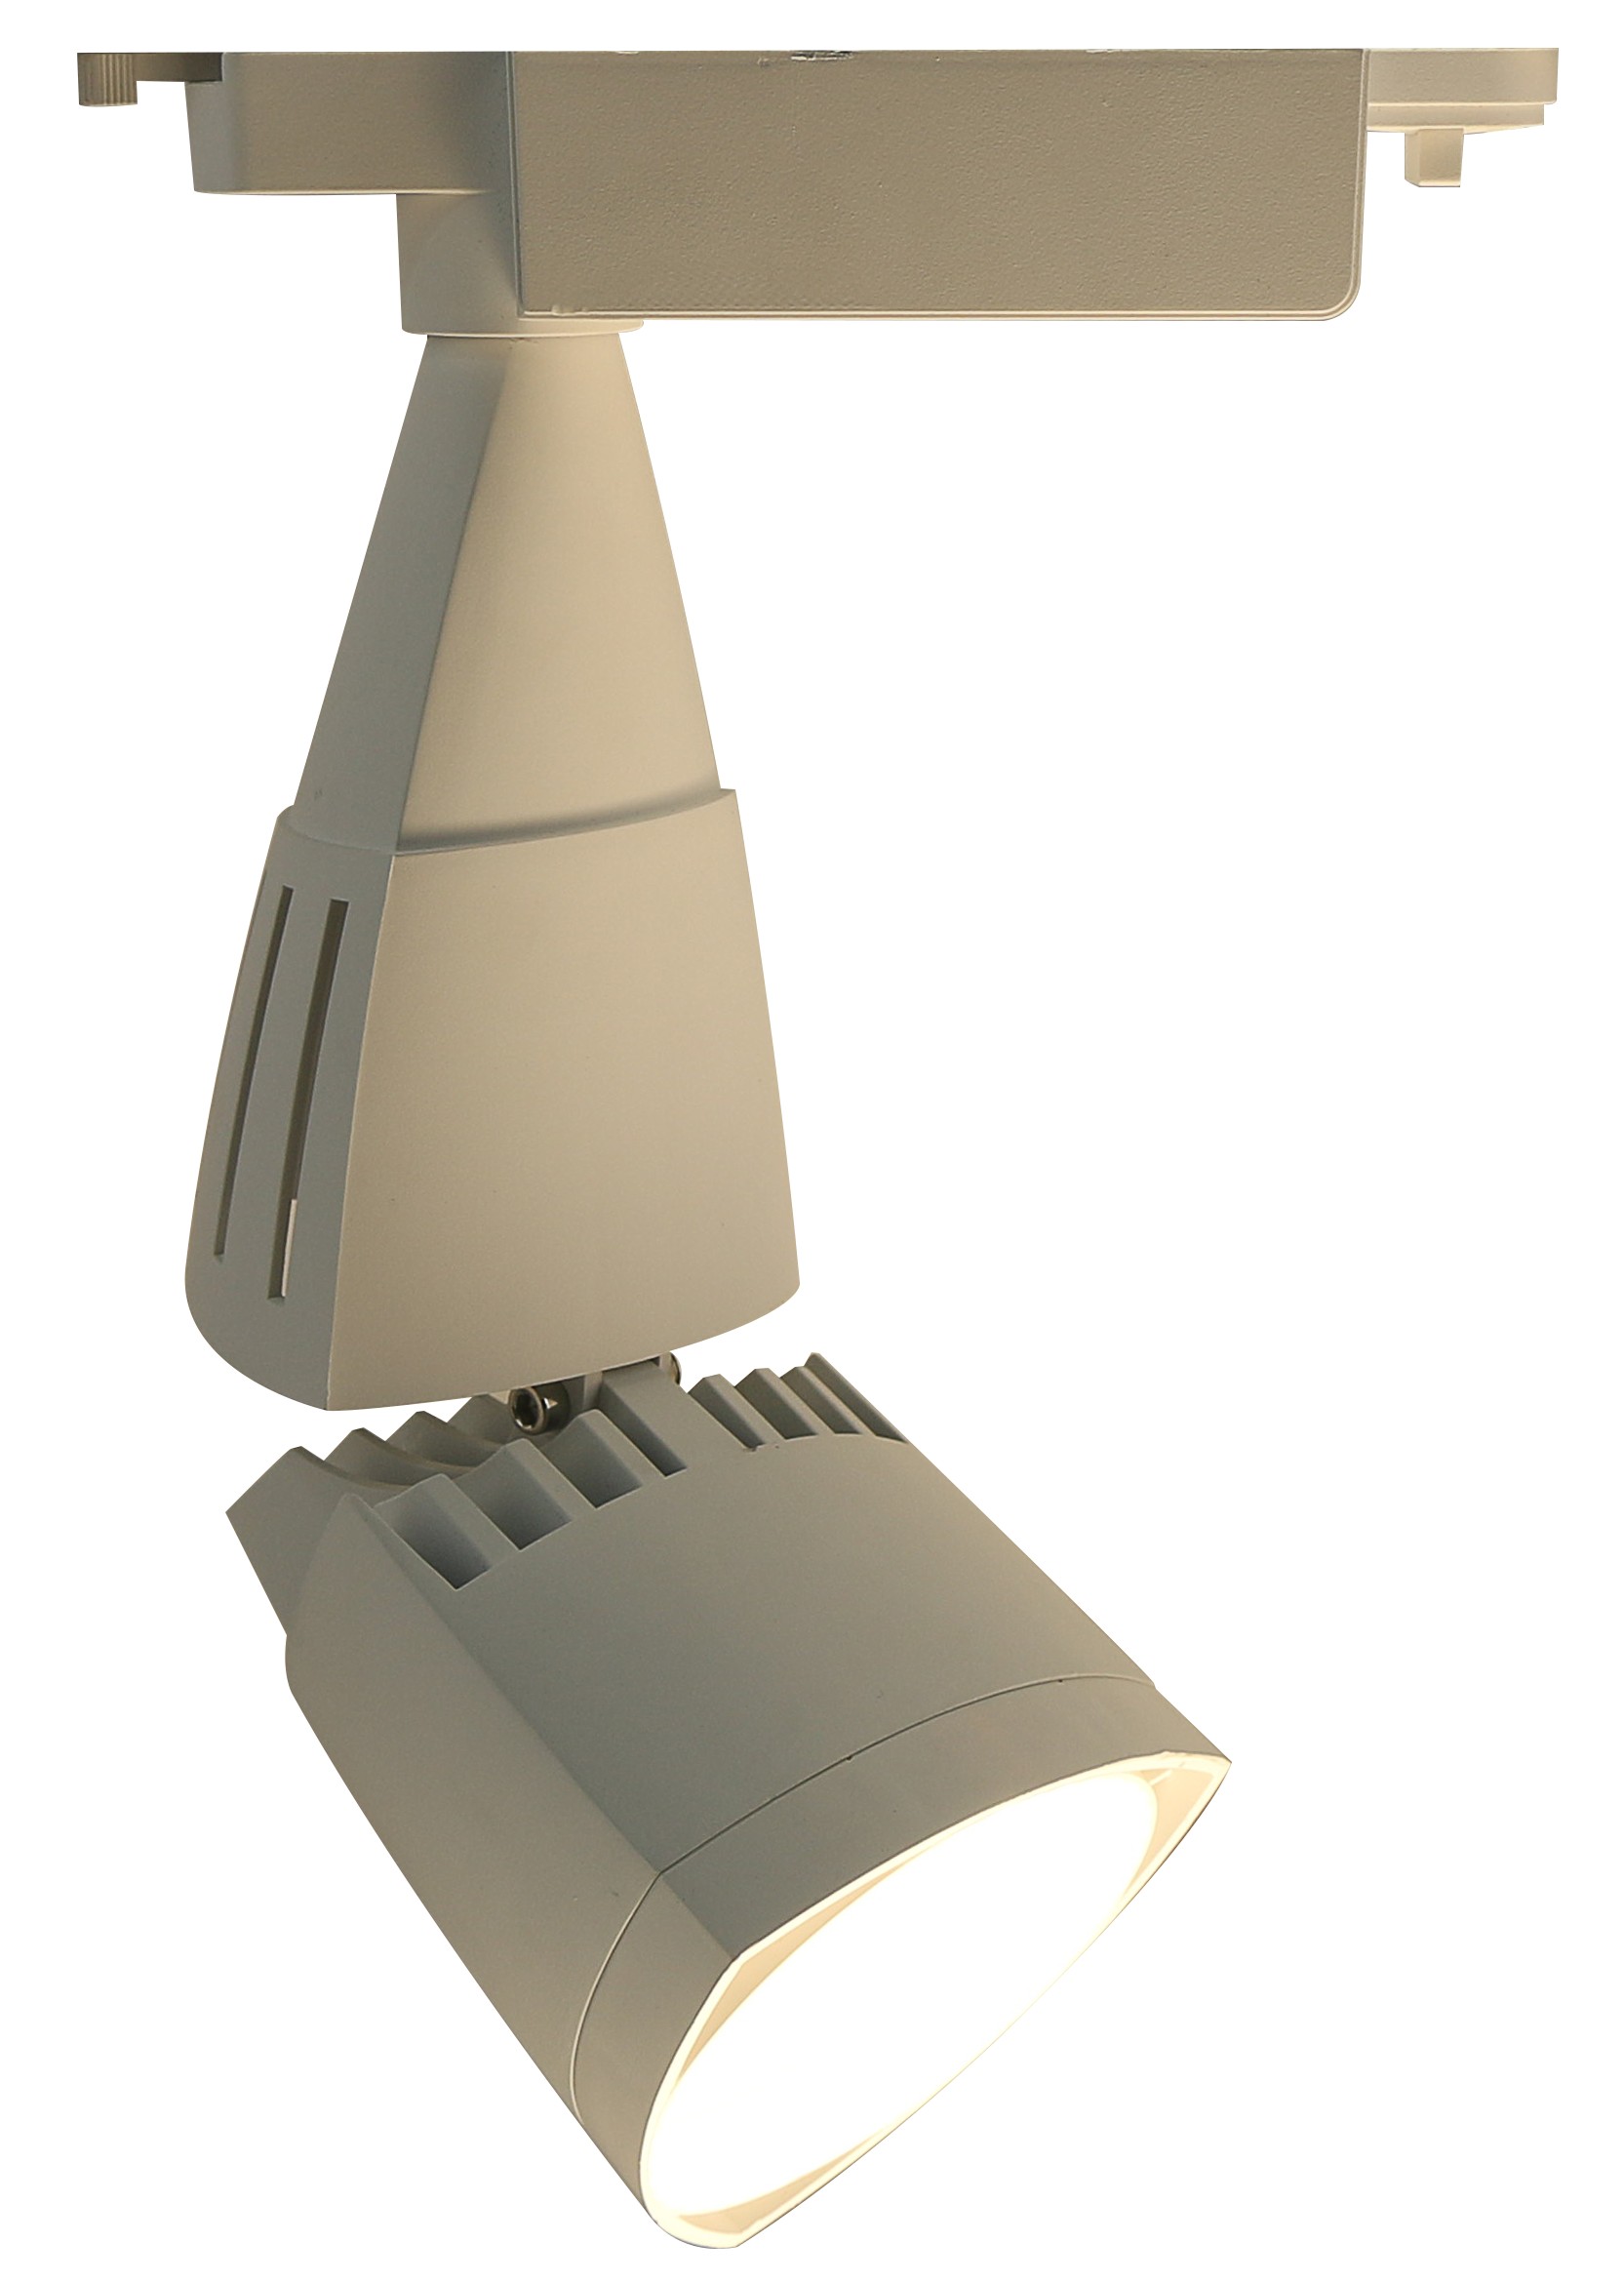 Светильник потолочный Arte Lamp A3830PL-1WH